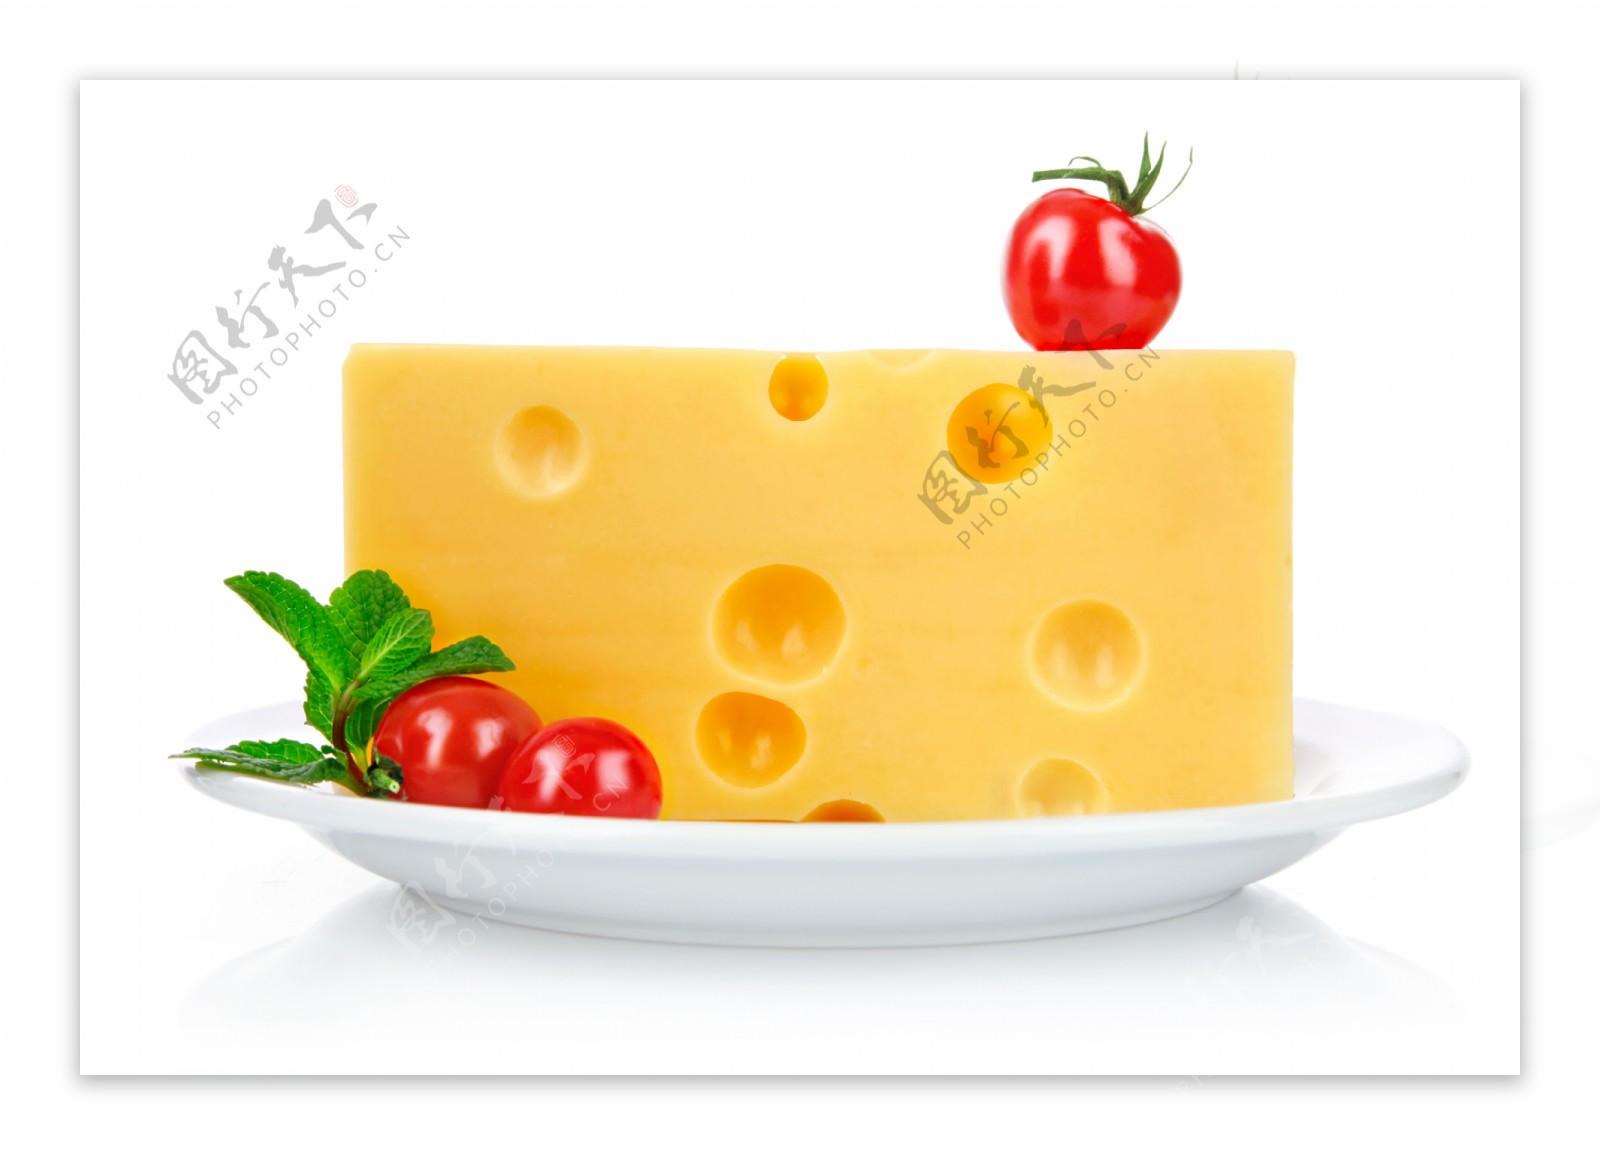 奶酪和西红柿图片